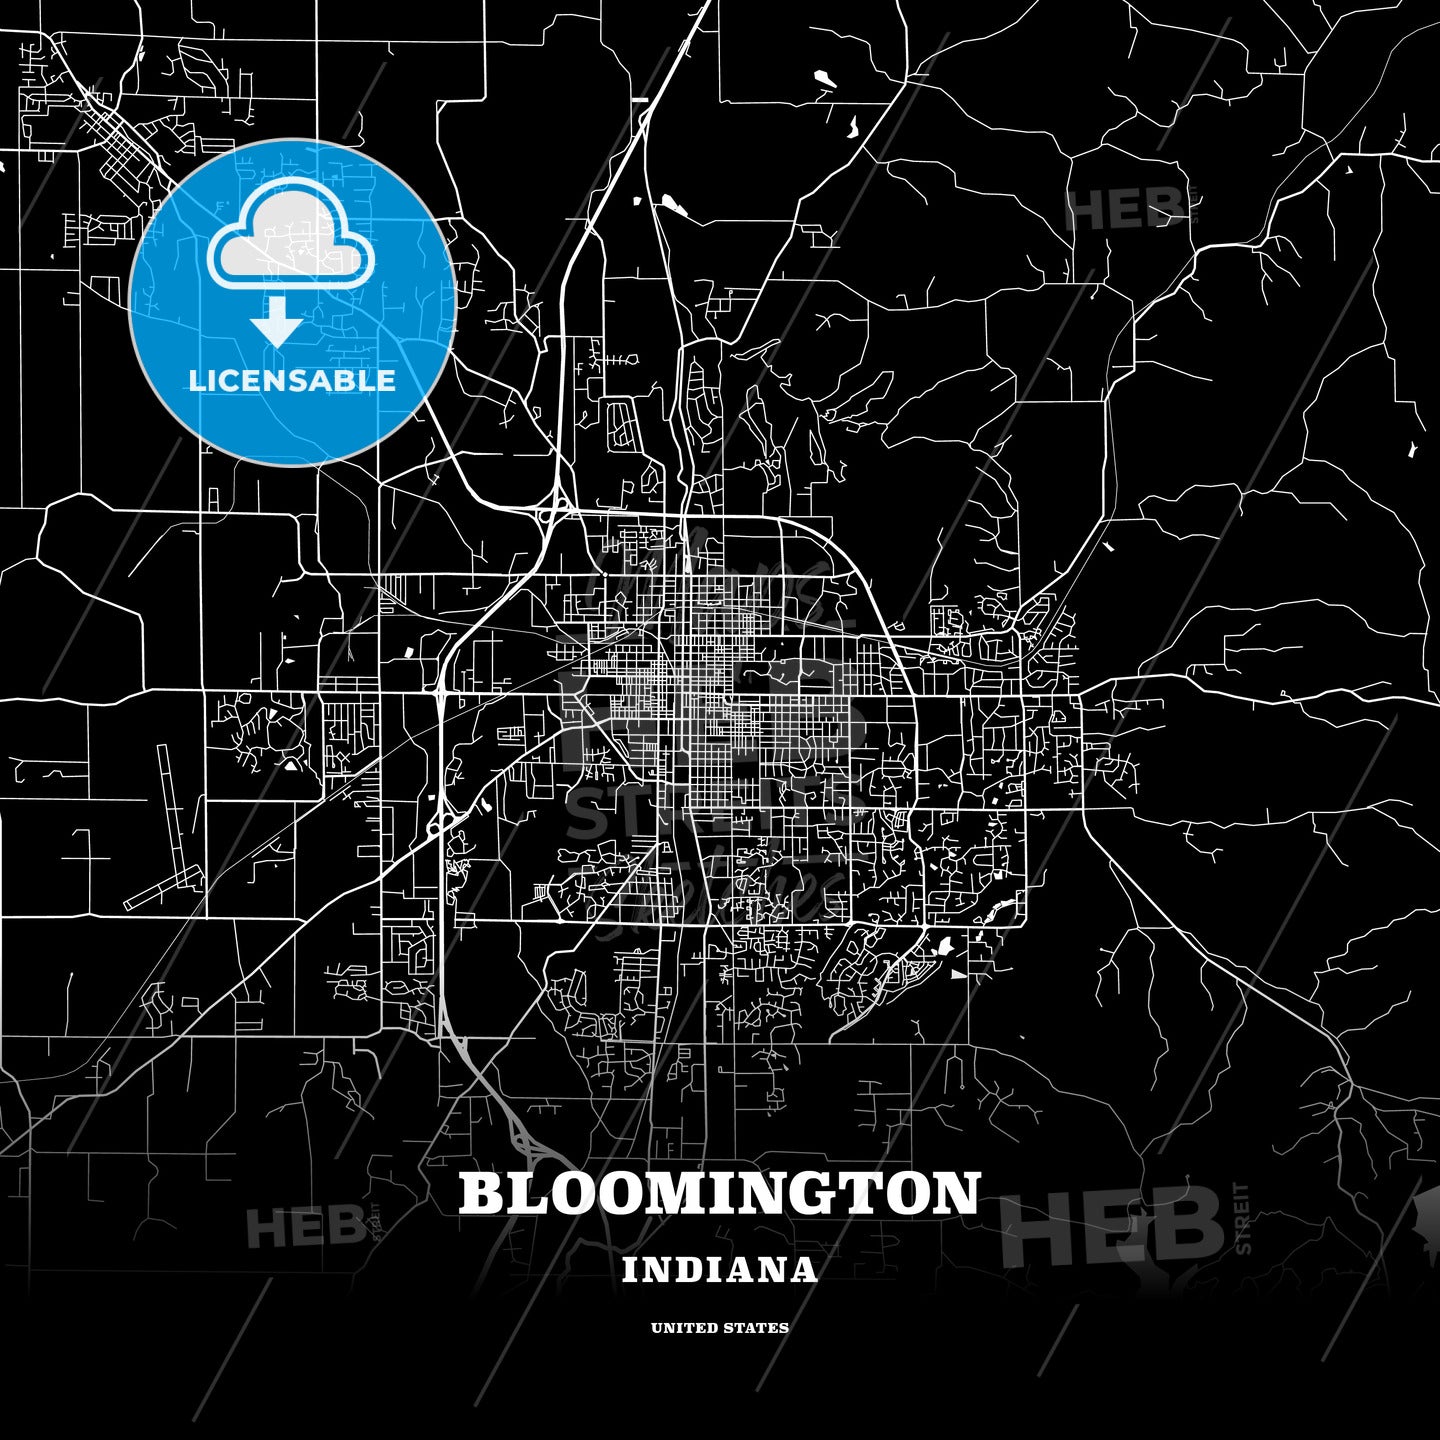 Bloomington, Indiana, USA map